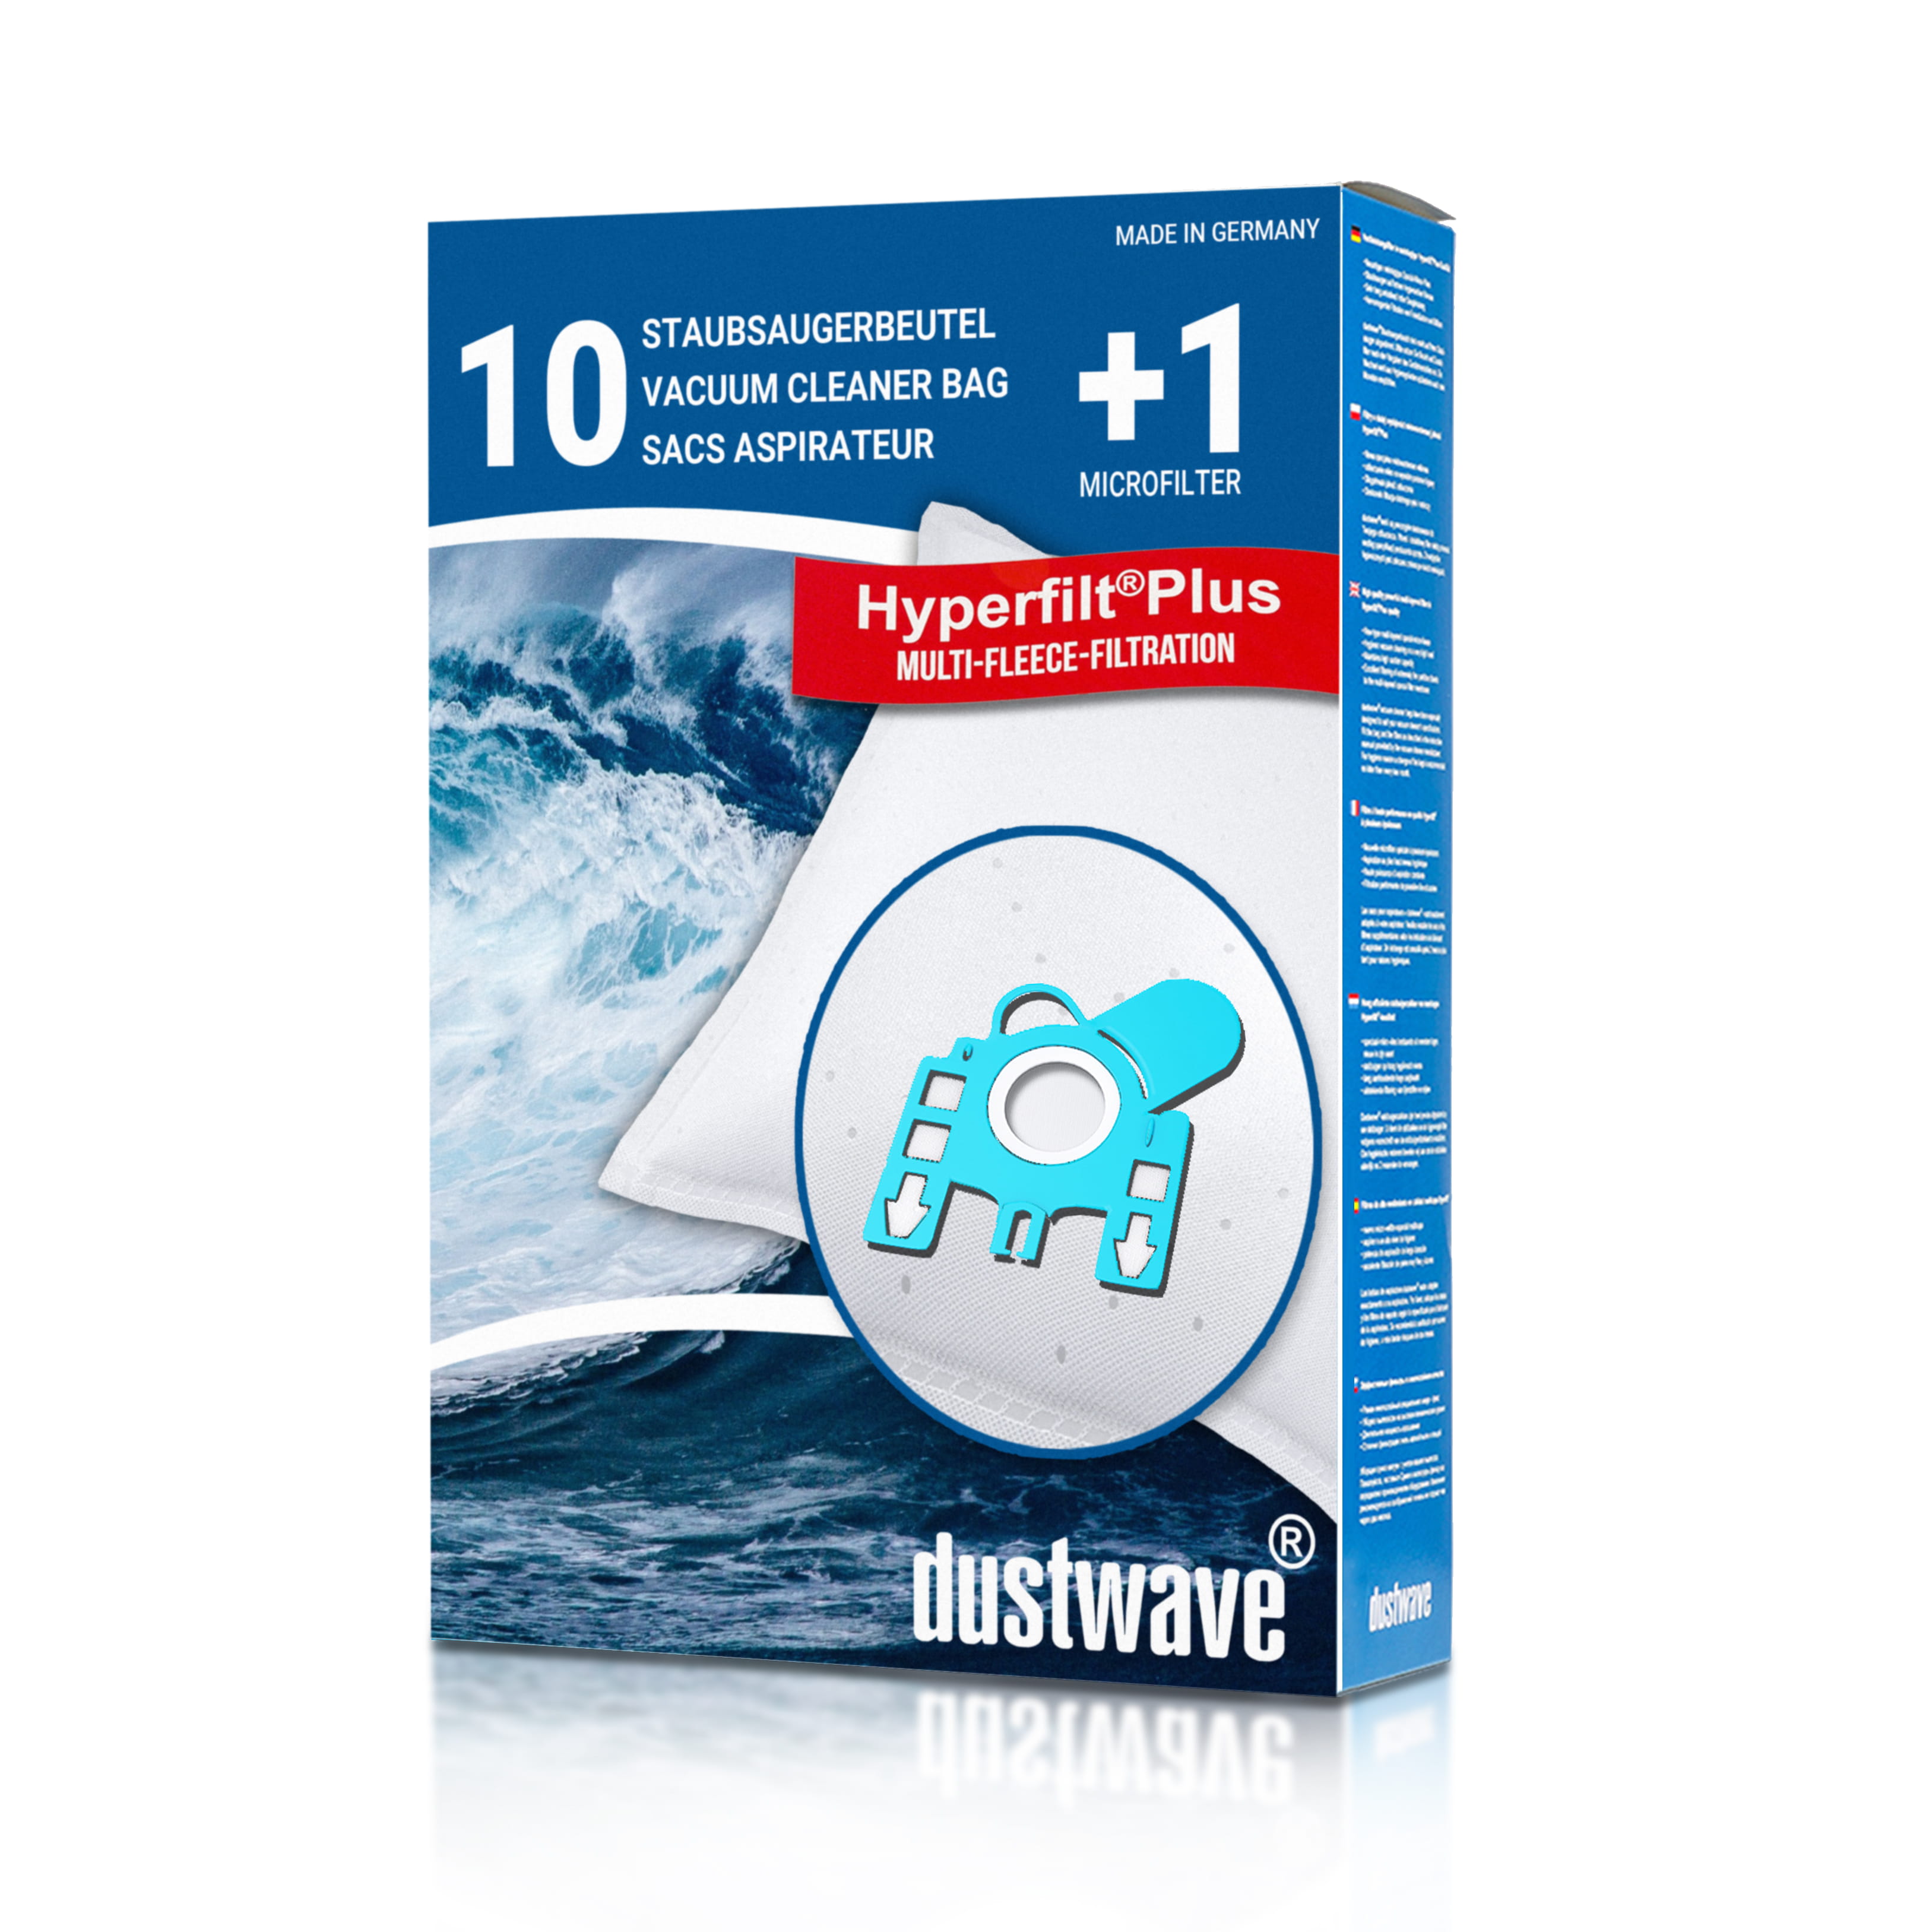 Dustwave® 10 Staubsaugerbeutel für Hoover TFB 2000… 2499 FreeMotion Serie - hocheffizient, mehrlagiges Mikrovlies mit Hygieneverschluss - Made in Germany